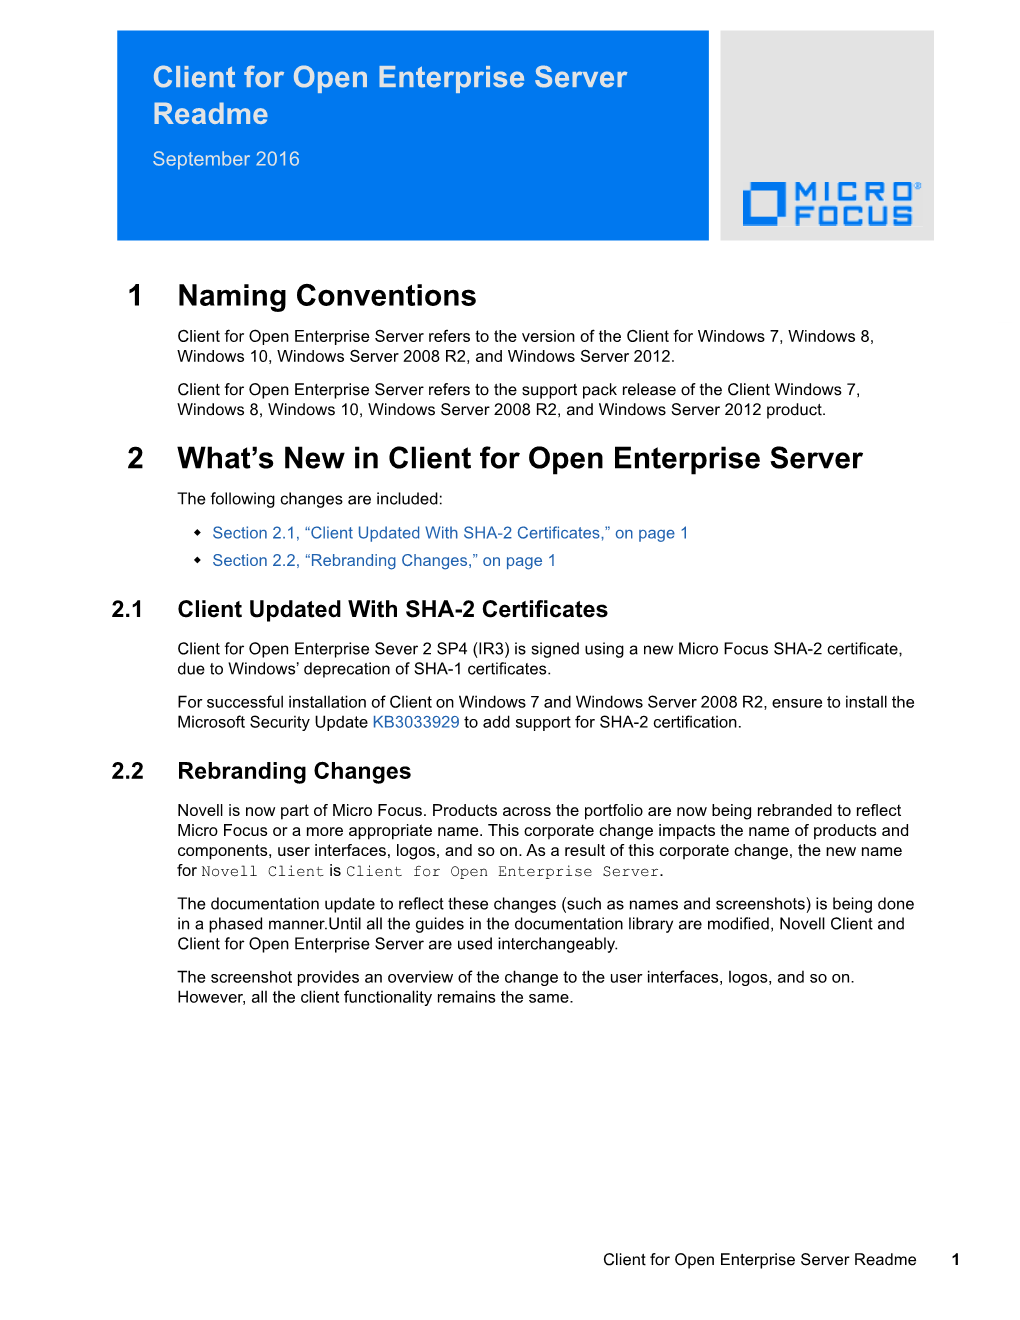 Client for Open Enterprise Server Readme September 2016